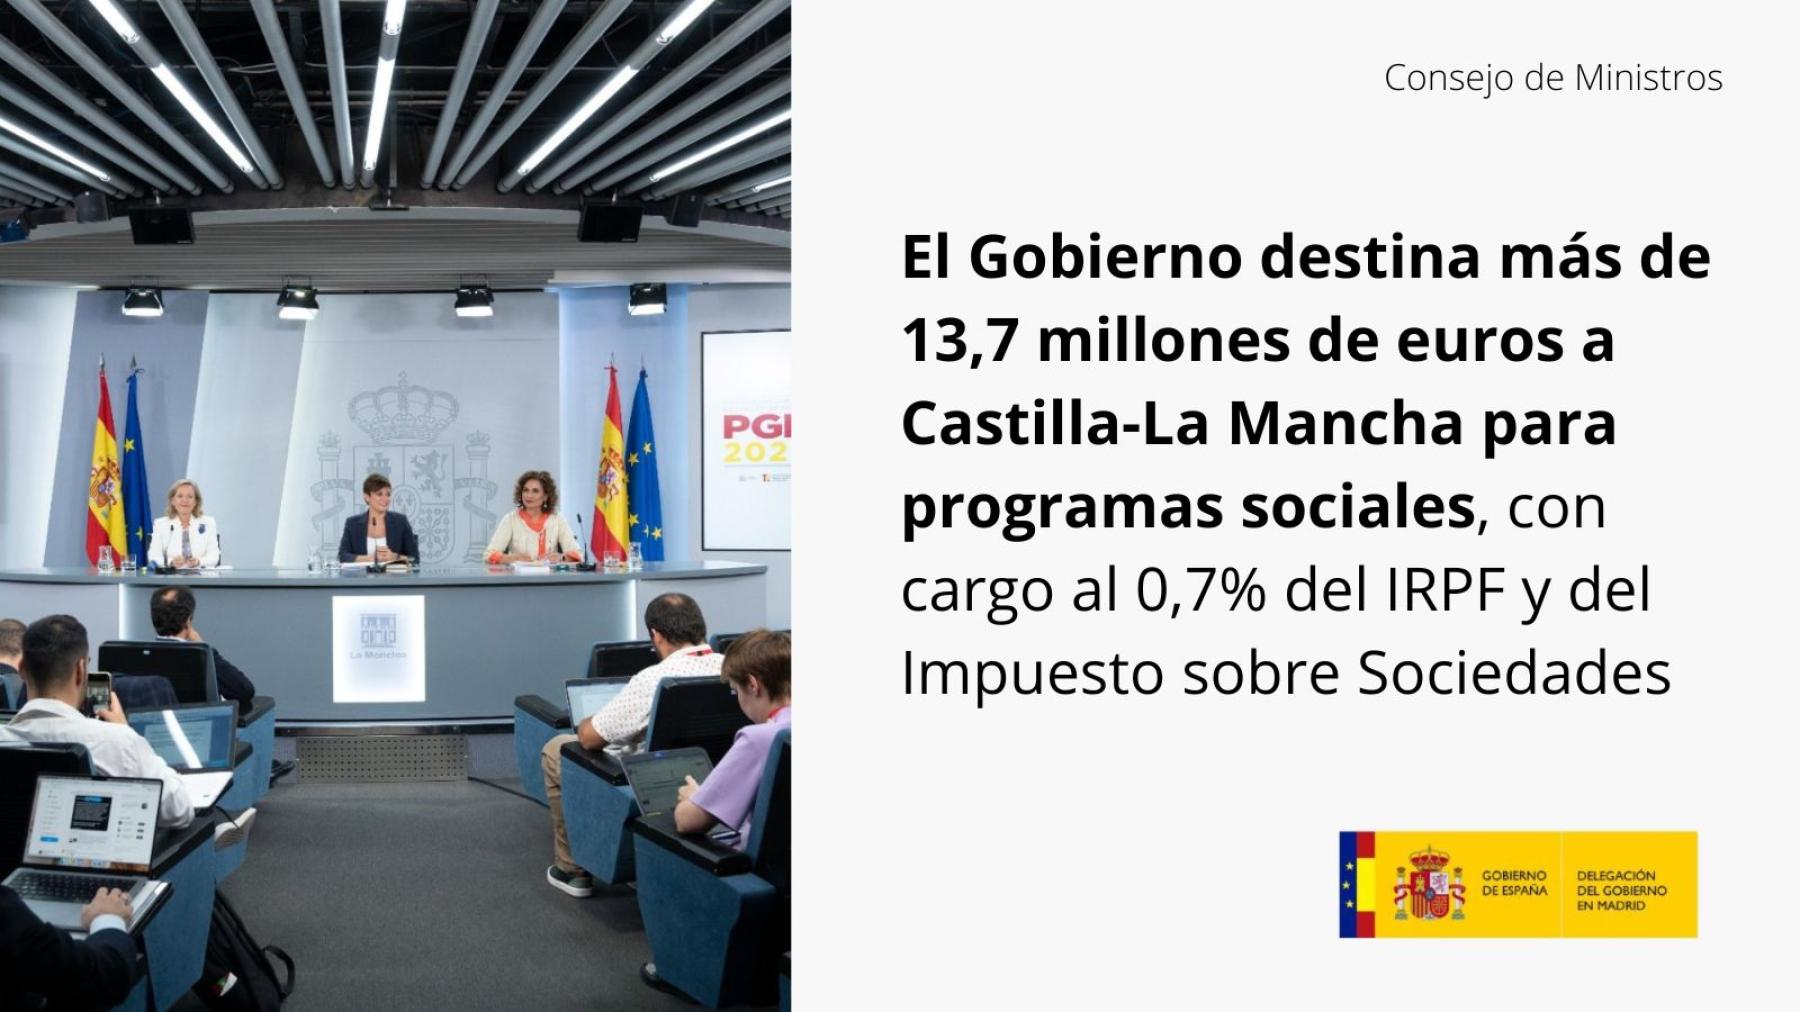 El Gobierno destina más de 13,7 millones de euros a Castilla-La Mancha para programas sociales, con cargo al 0,7% del IRPF y del Impuesto sobre Sociedades